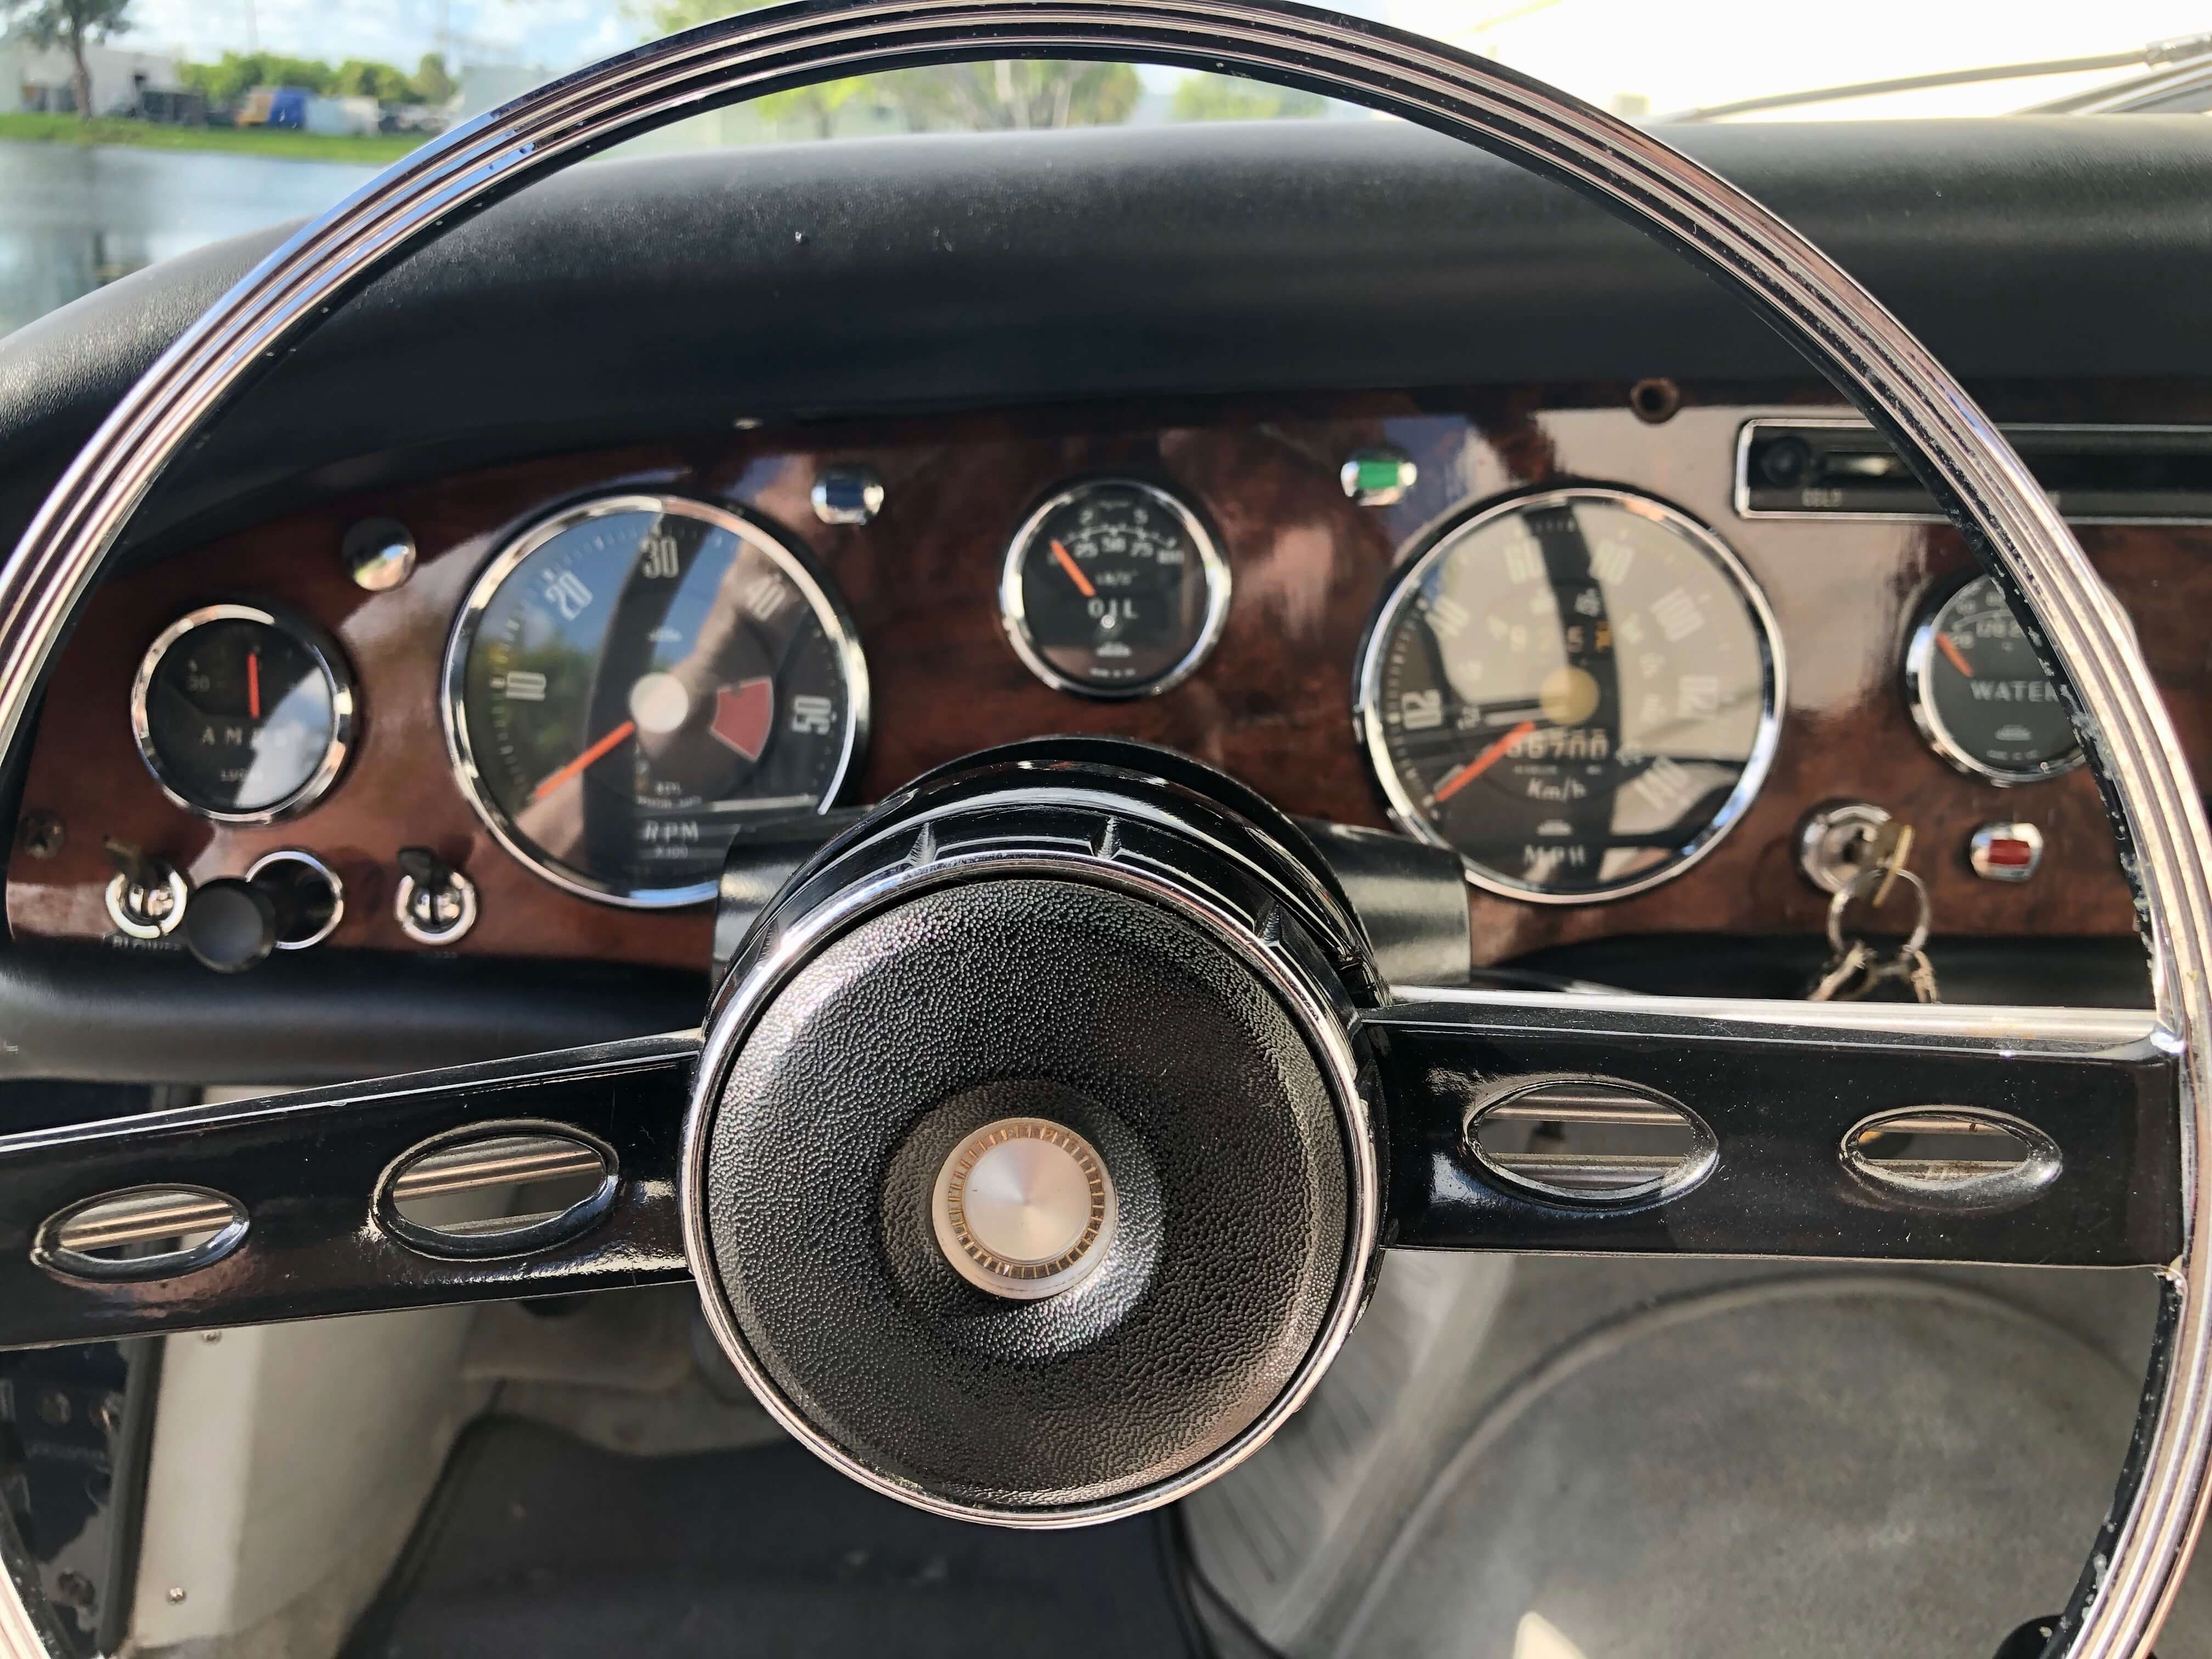 1965 Sunbeam Tiger steering wheel